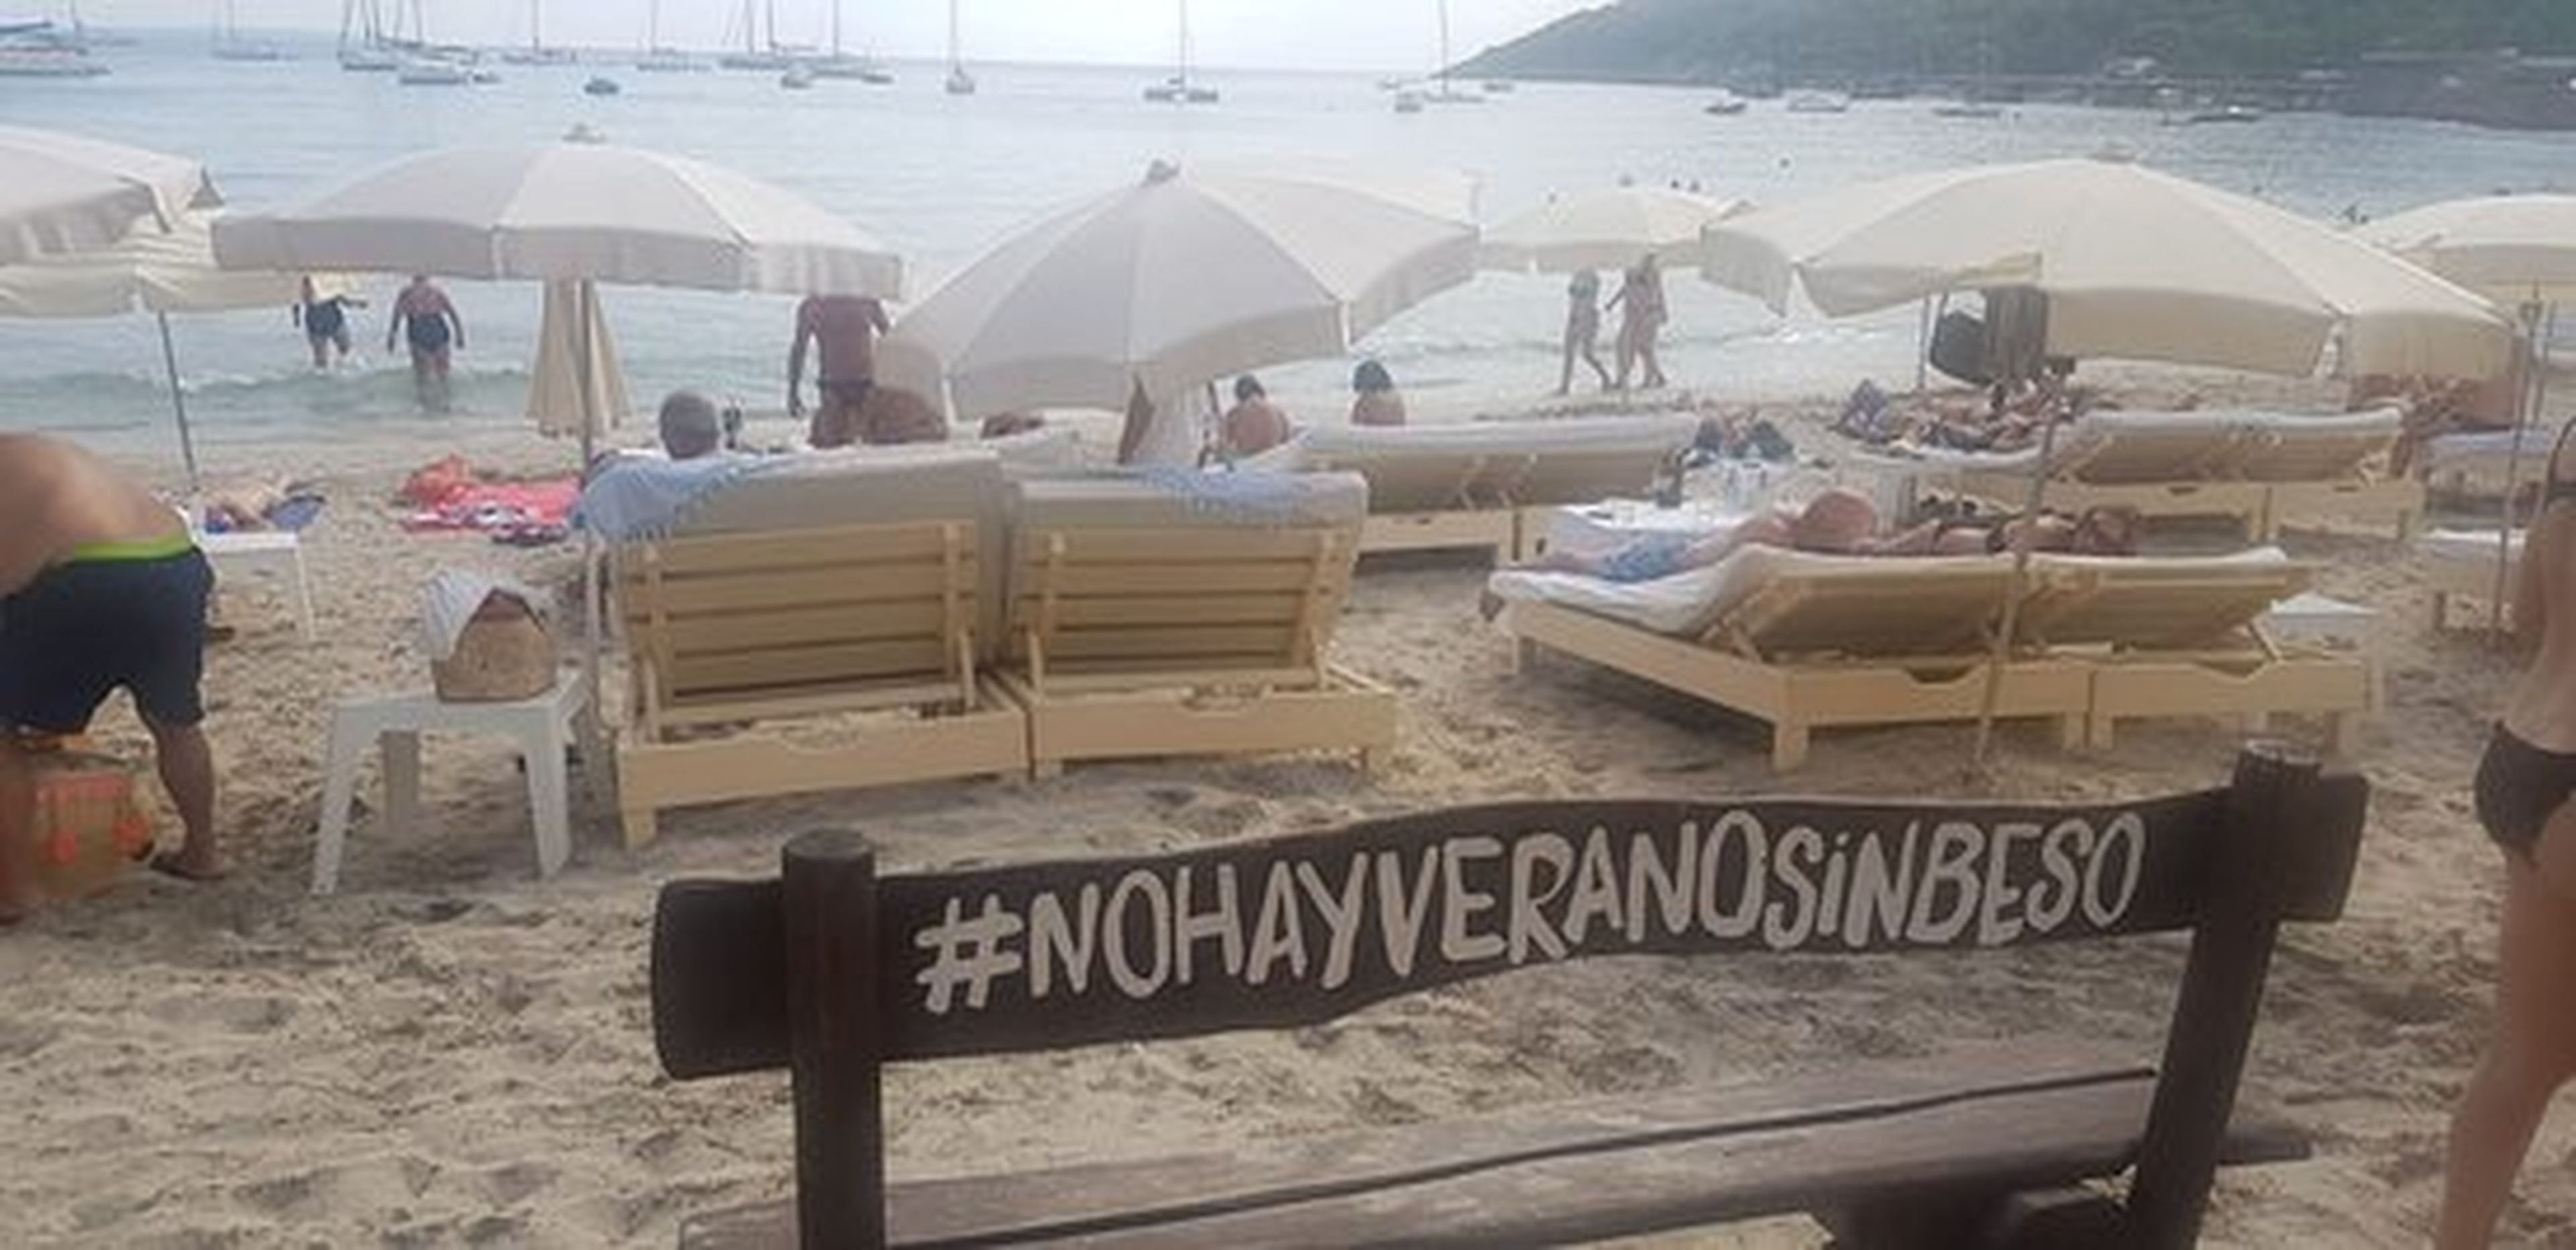 Banco de Ibiza: "No hay verano sin beso".